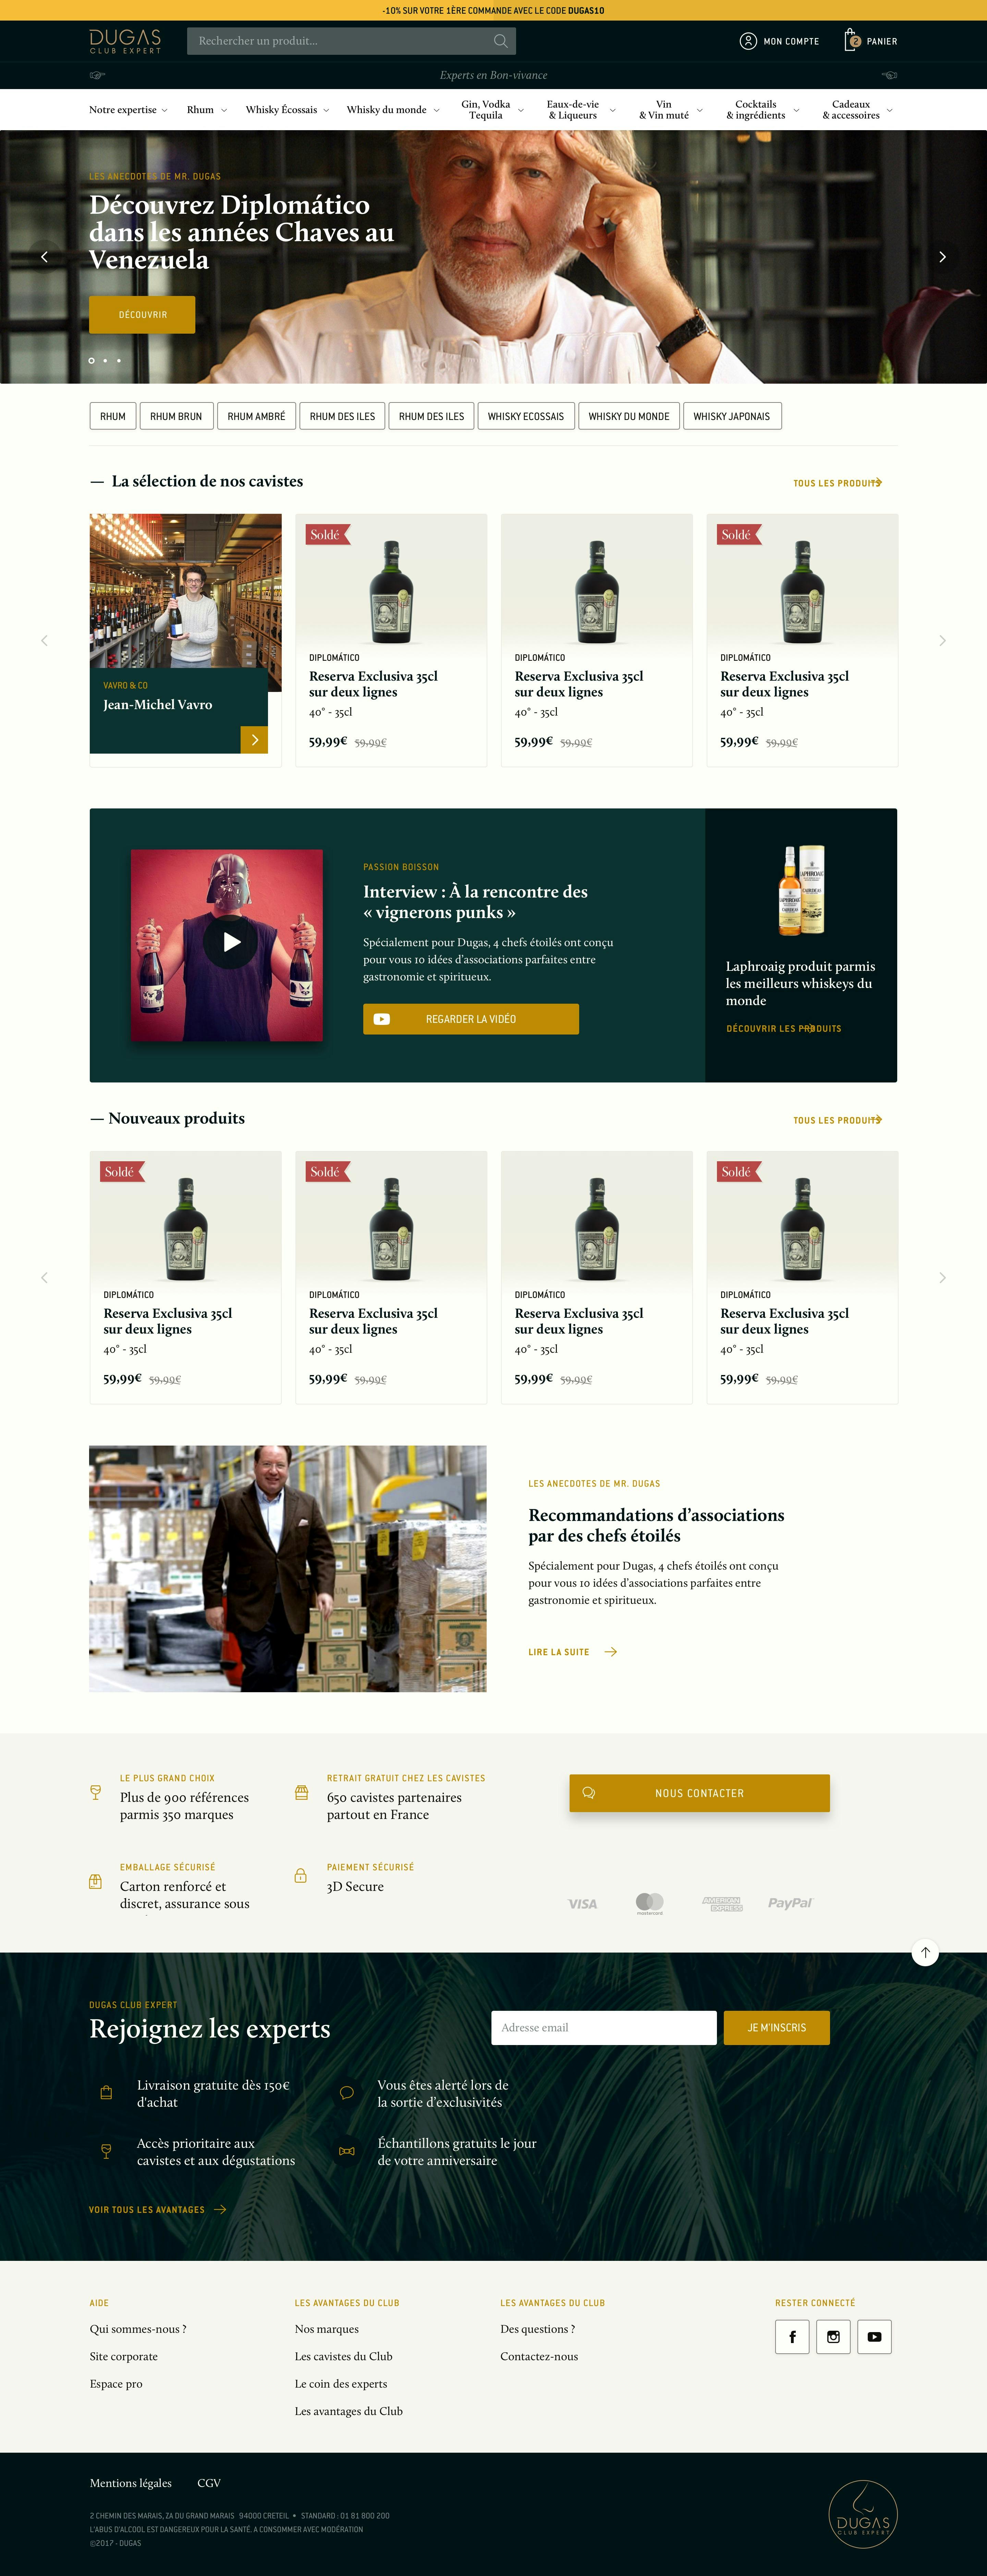 Design of e-commerce website